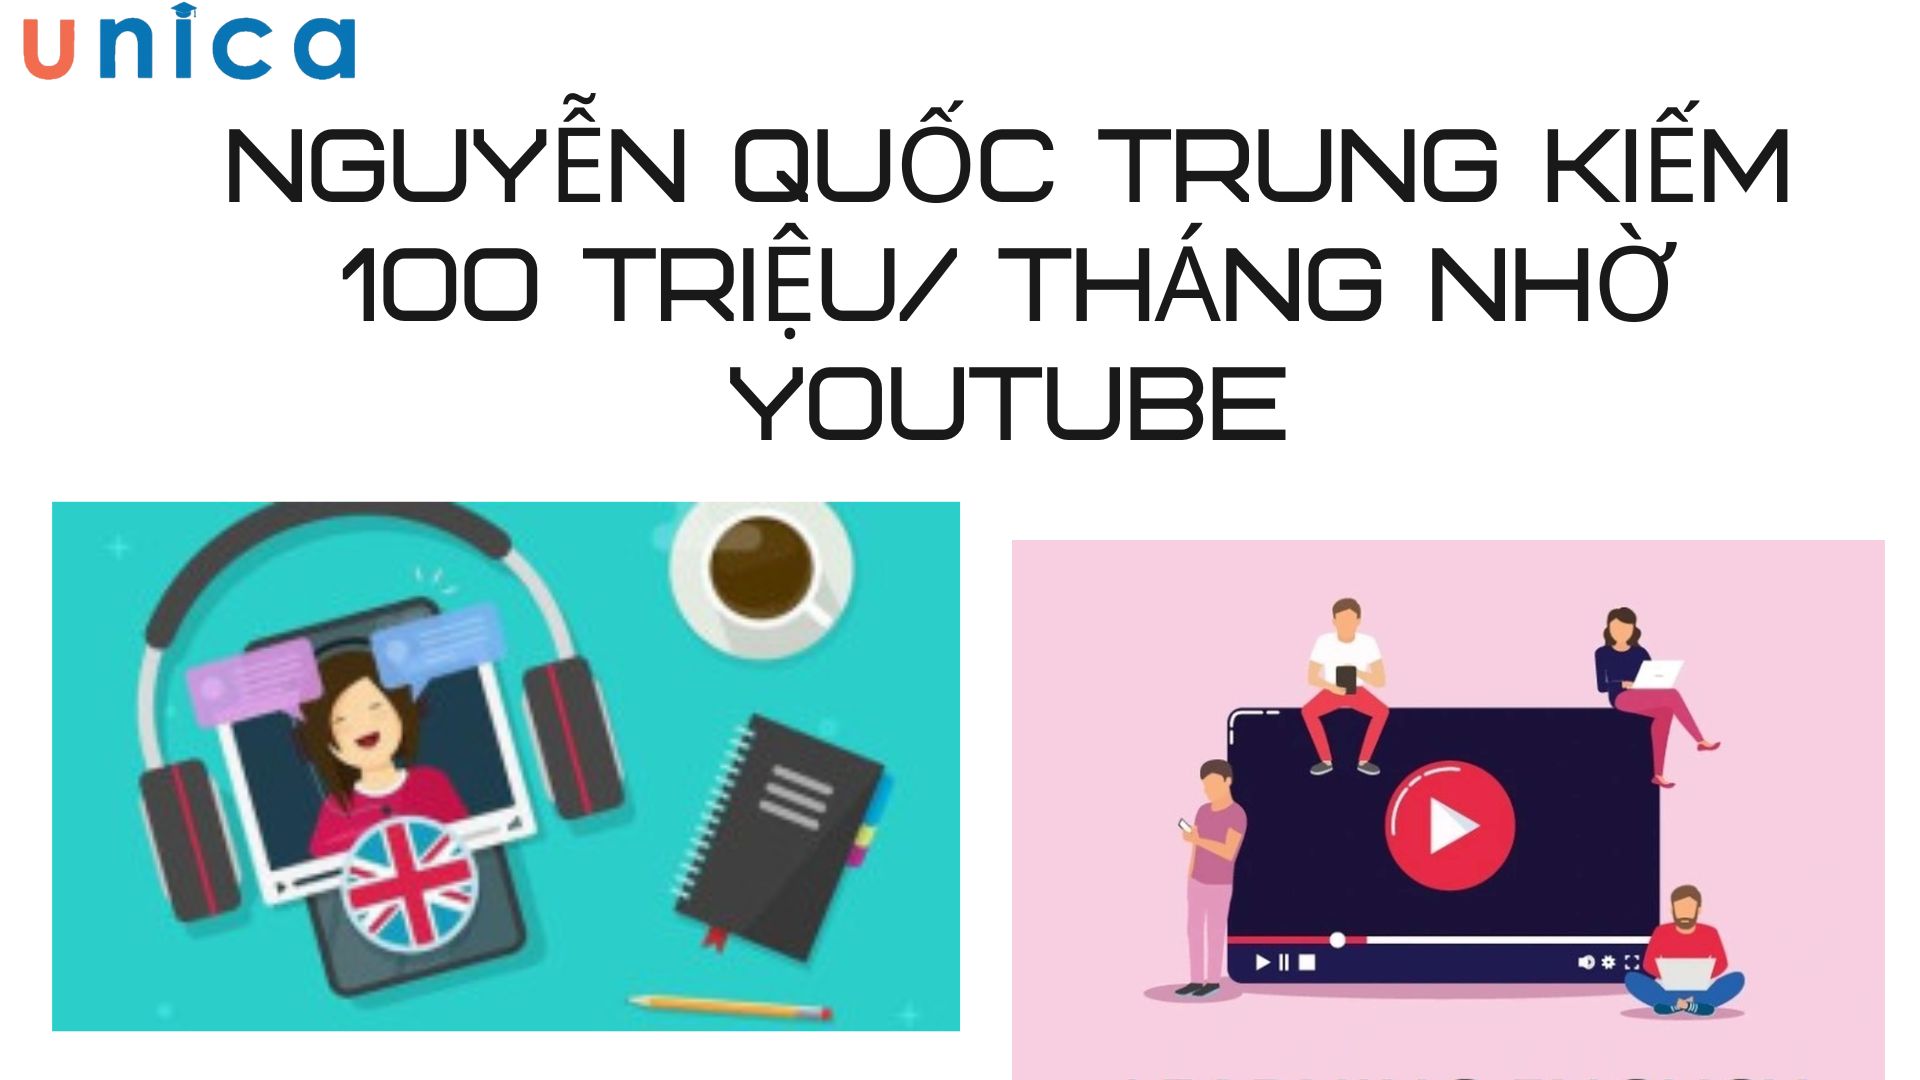 Nguyễn Quốc Trung kiếm 100 triệu/ tháng nhờ Youtube